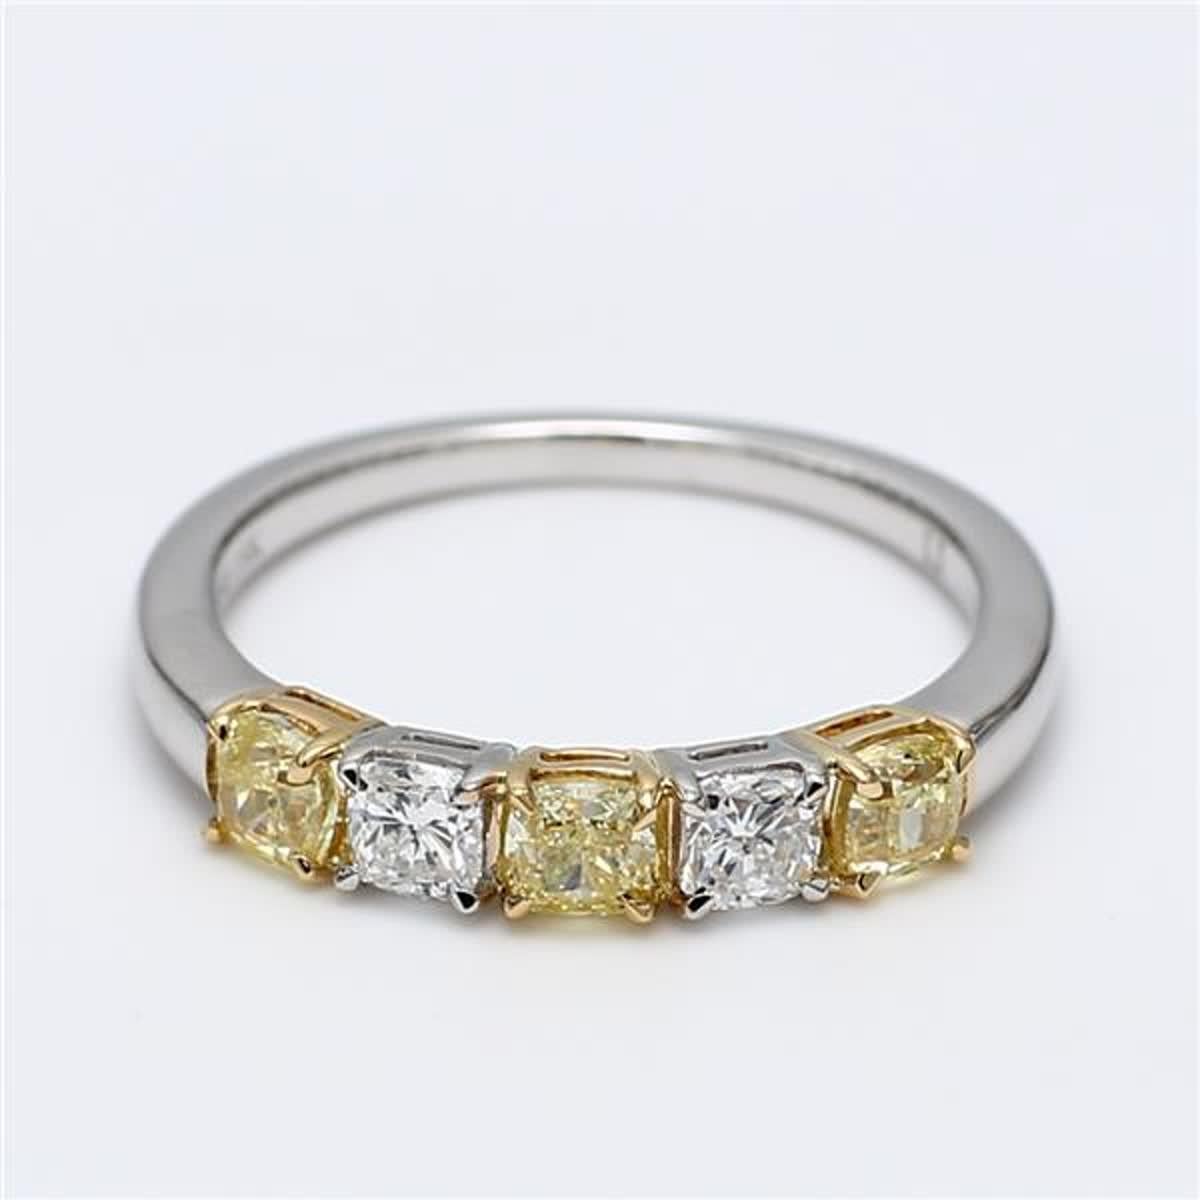 Das klassische Diamantband von RareGemWorld. Eingefasst in eine wunderschöne Fassung aus 18 Karat Gelb- und Weißgold mit natürlichen gelben Diamanten im Kissenschliff, ergänzt durch weiße Diamanten im Kissenschliff. Dieses Band wird Sie garantiert